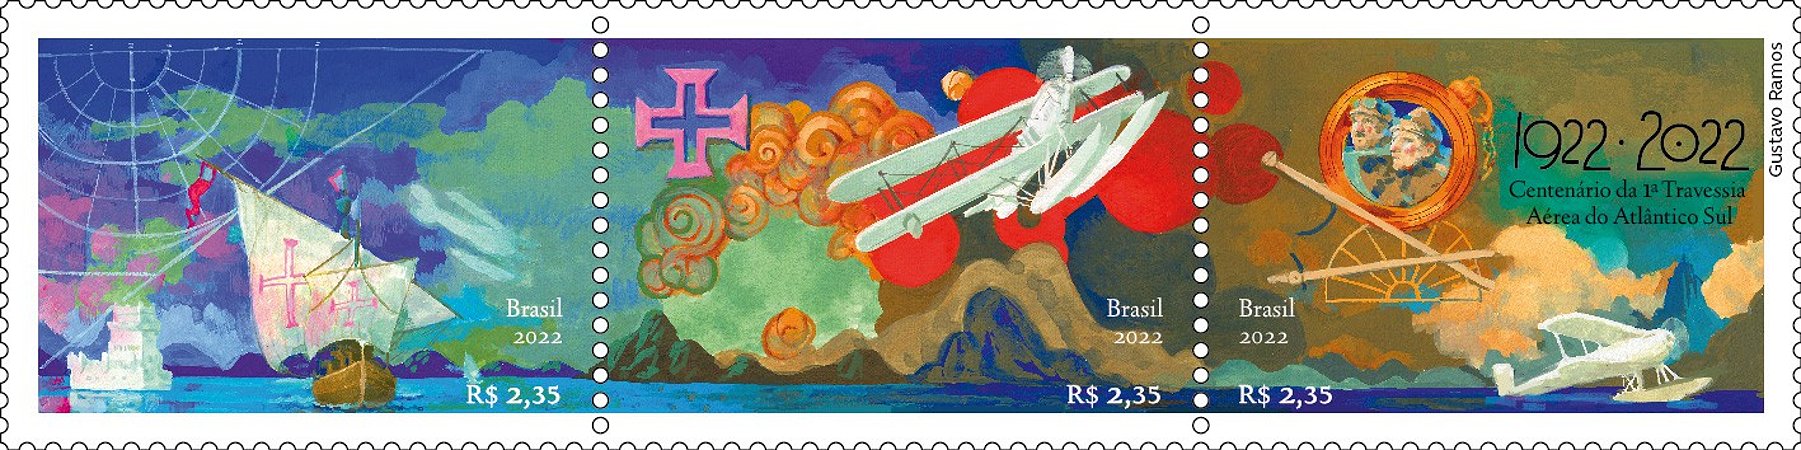 2022  Centenário da Primeira Travessia Aérea do Atlântico Sul - serie de 3 selos se-tenant (mint)